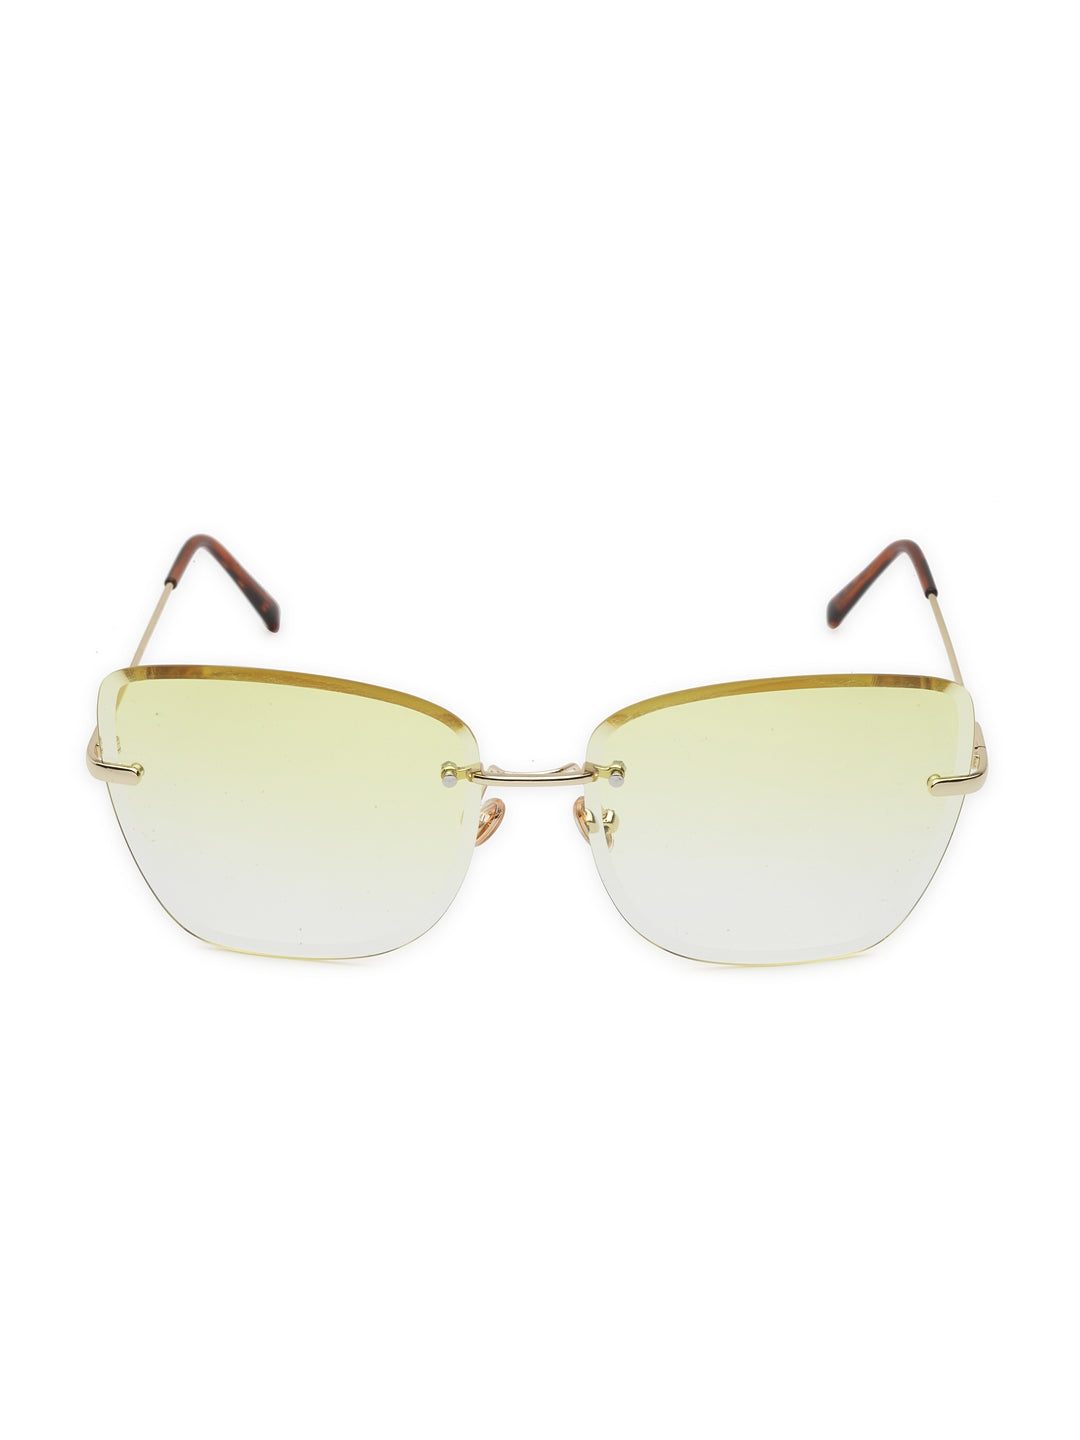 Letnie modne okulary przeciwsłoneczne w kształcie oceanu bez oprawek